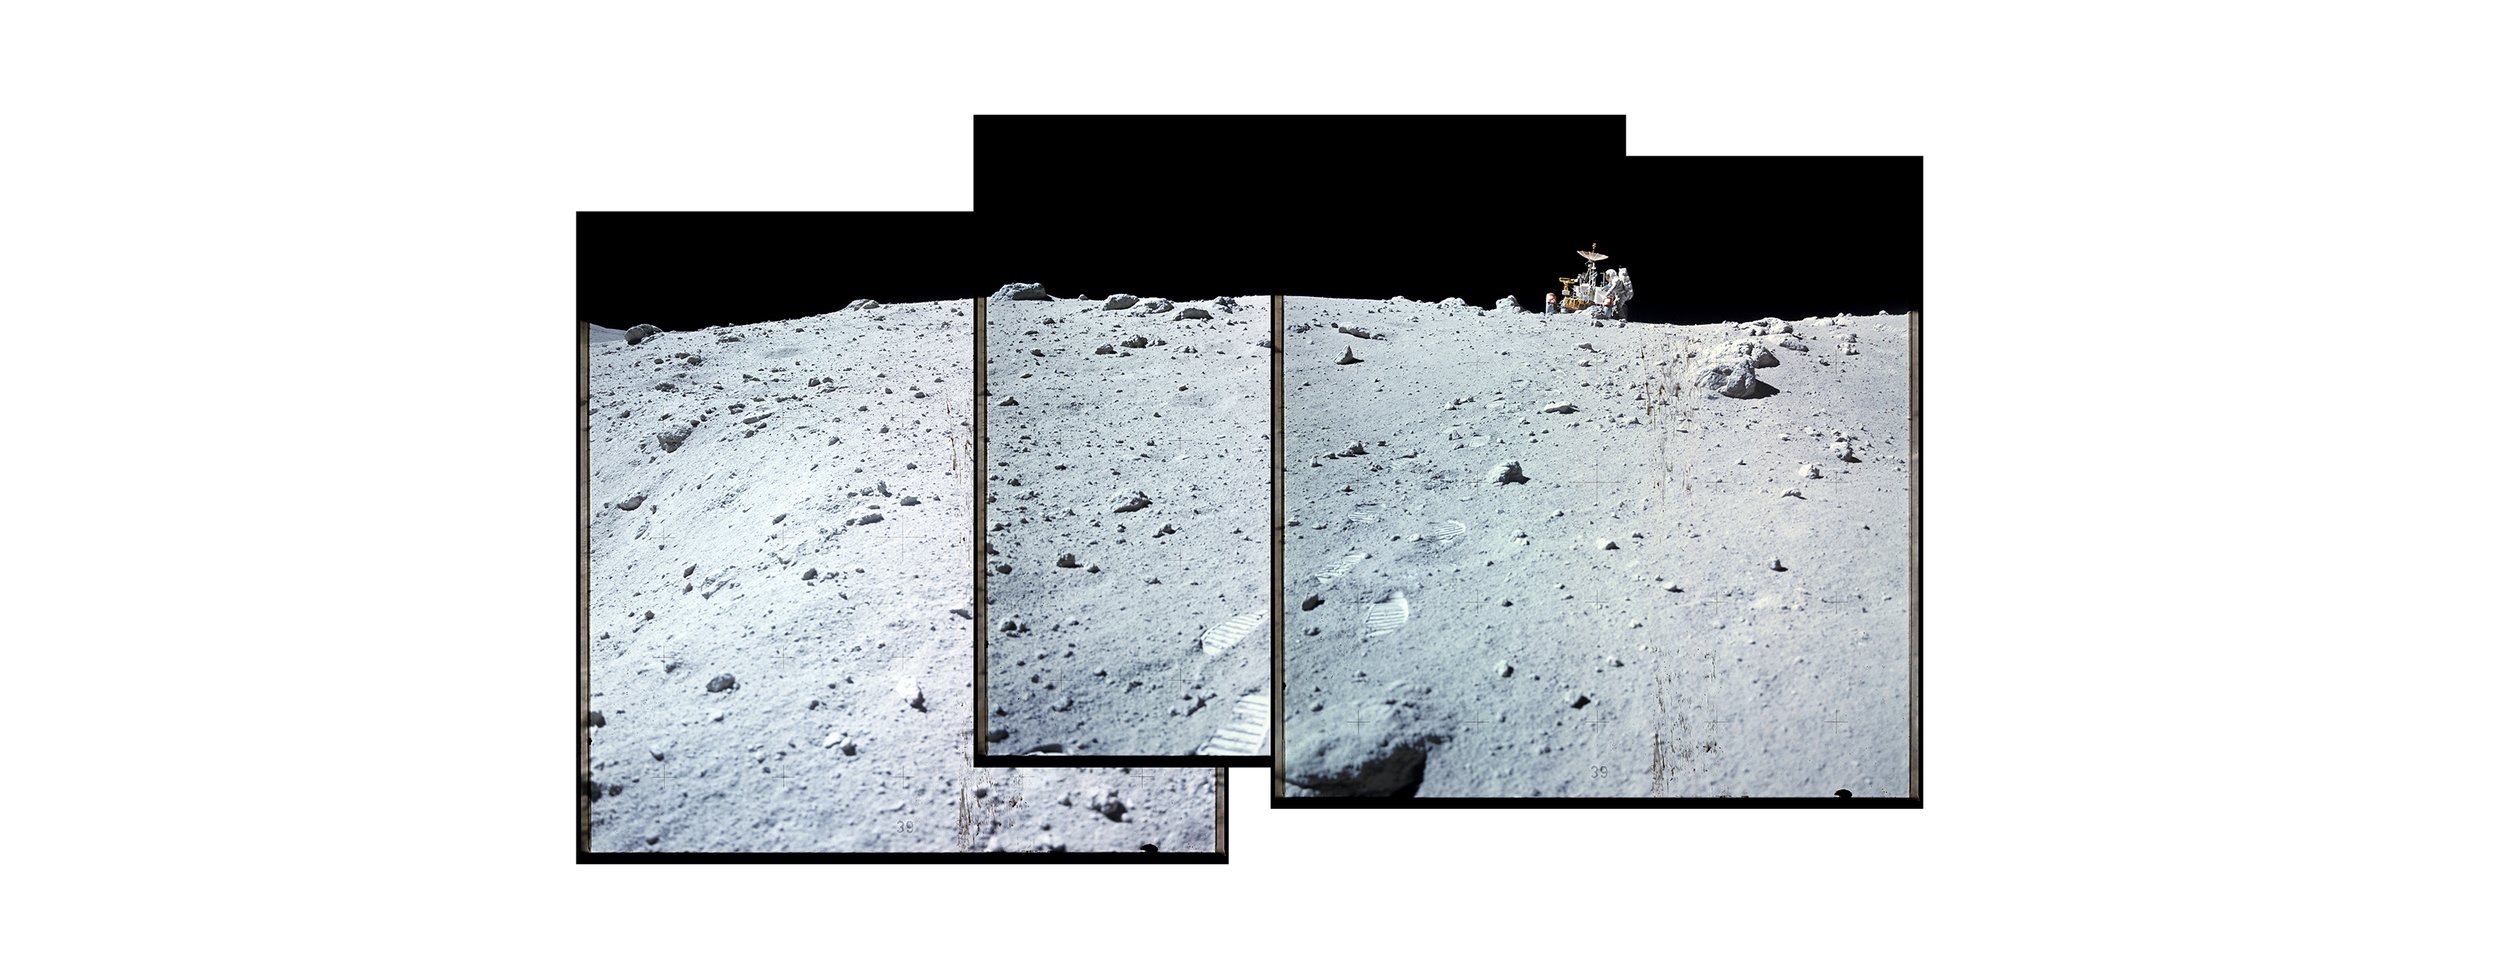  Descartes crater, LRV (Lunar Roving Vehicle) (100x60)Apollo 16 Magazine 116/E - NASA photographs 1972 